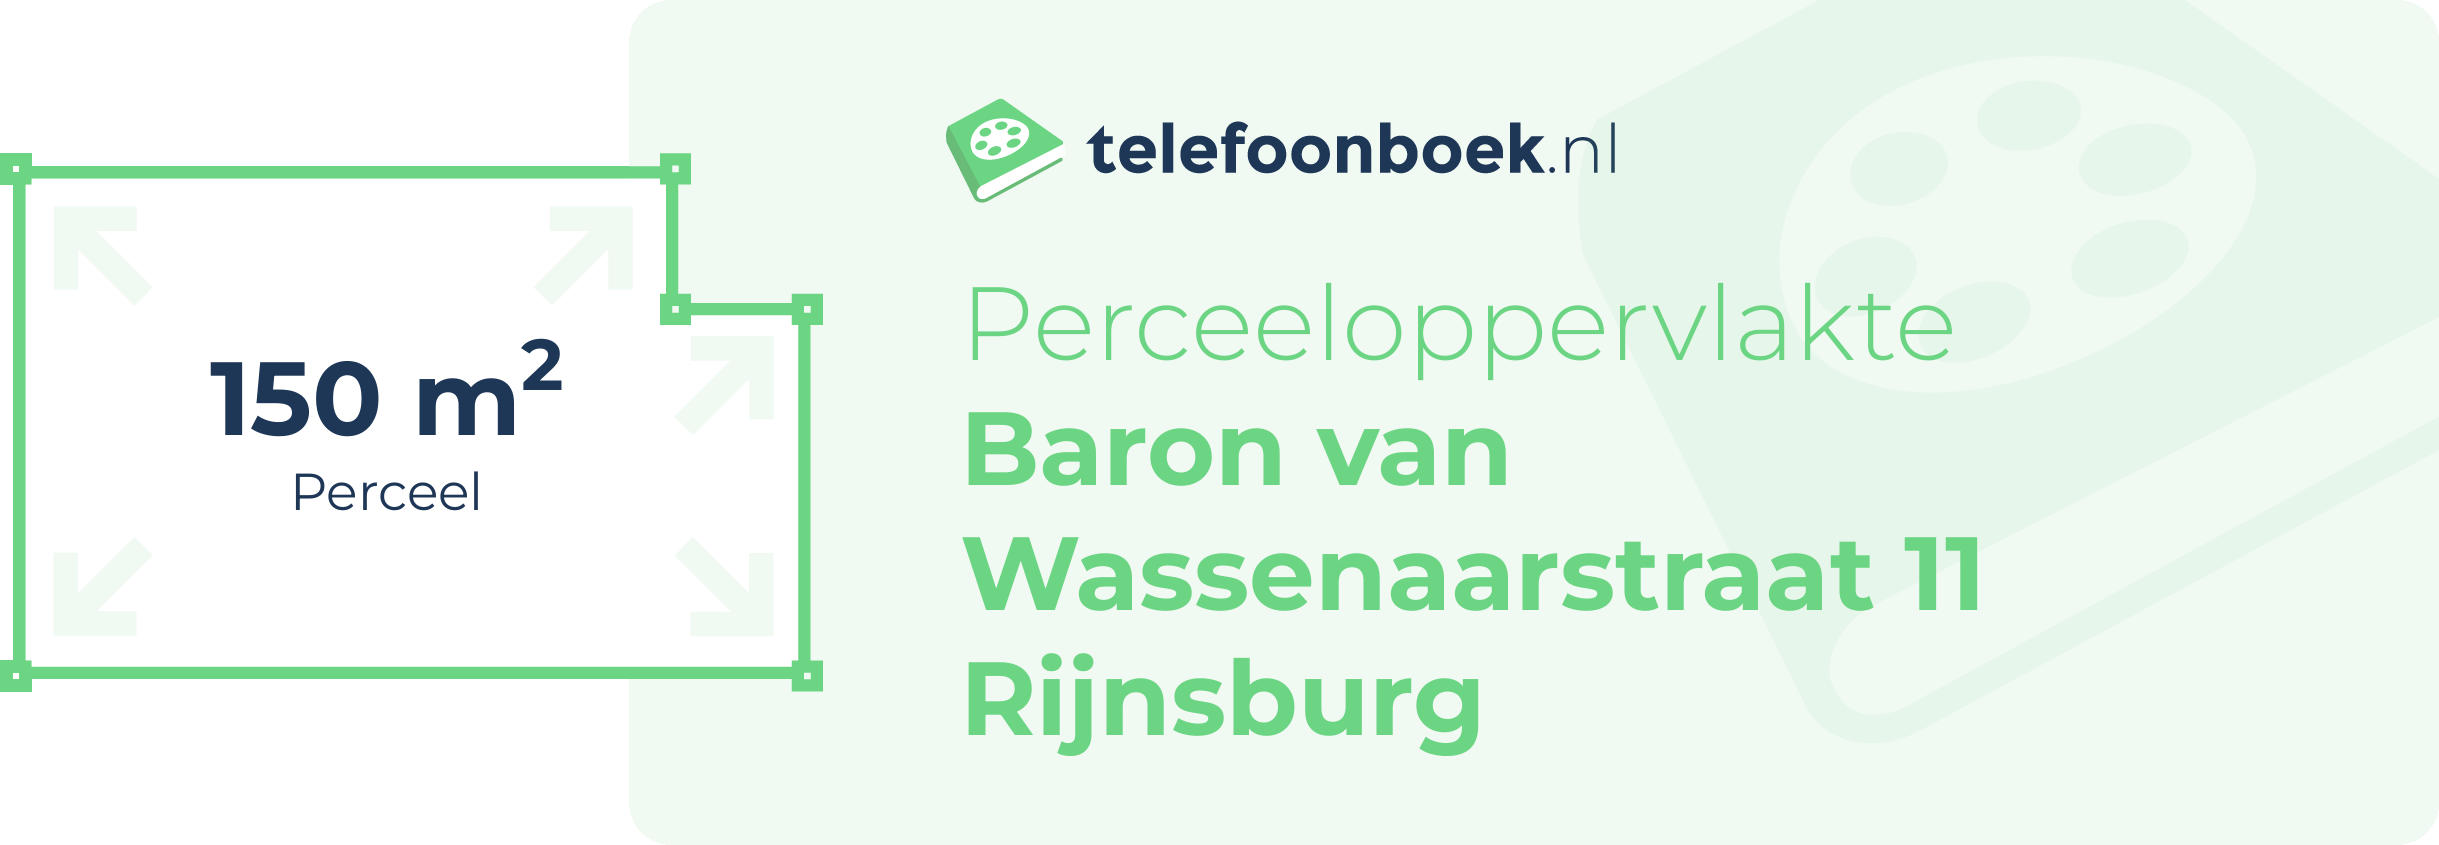 Perceeloppervlakte Baron Van Wassenaarstraat 11 Rijnsburg